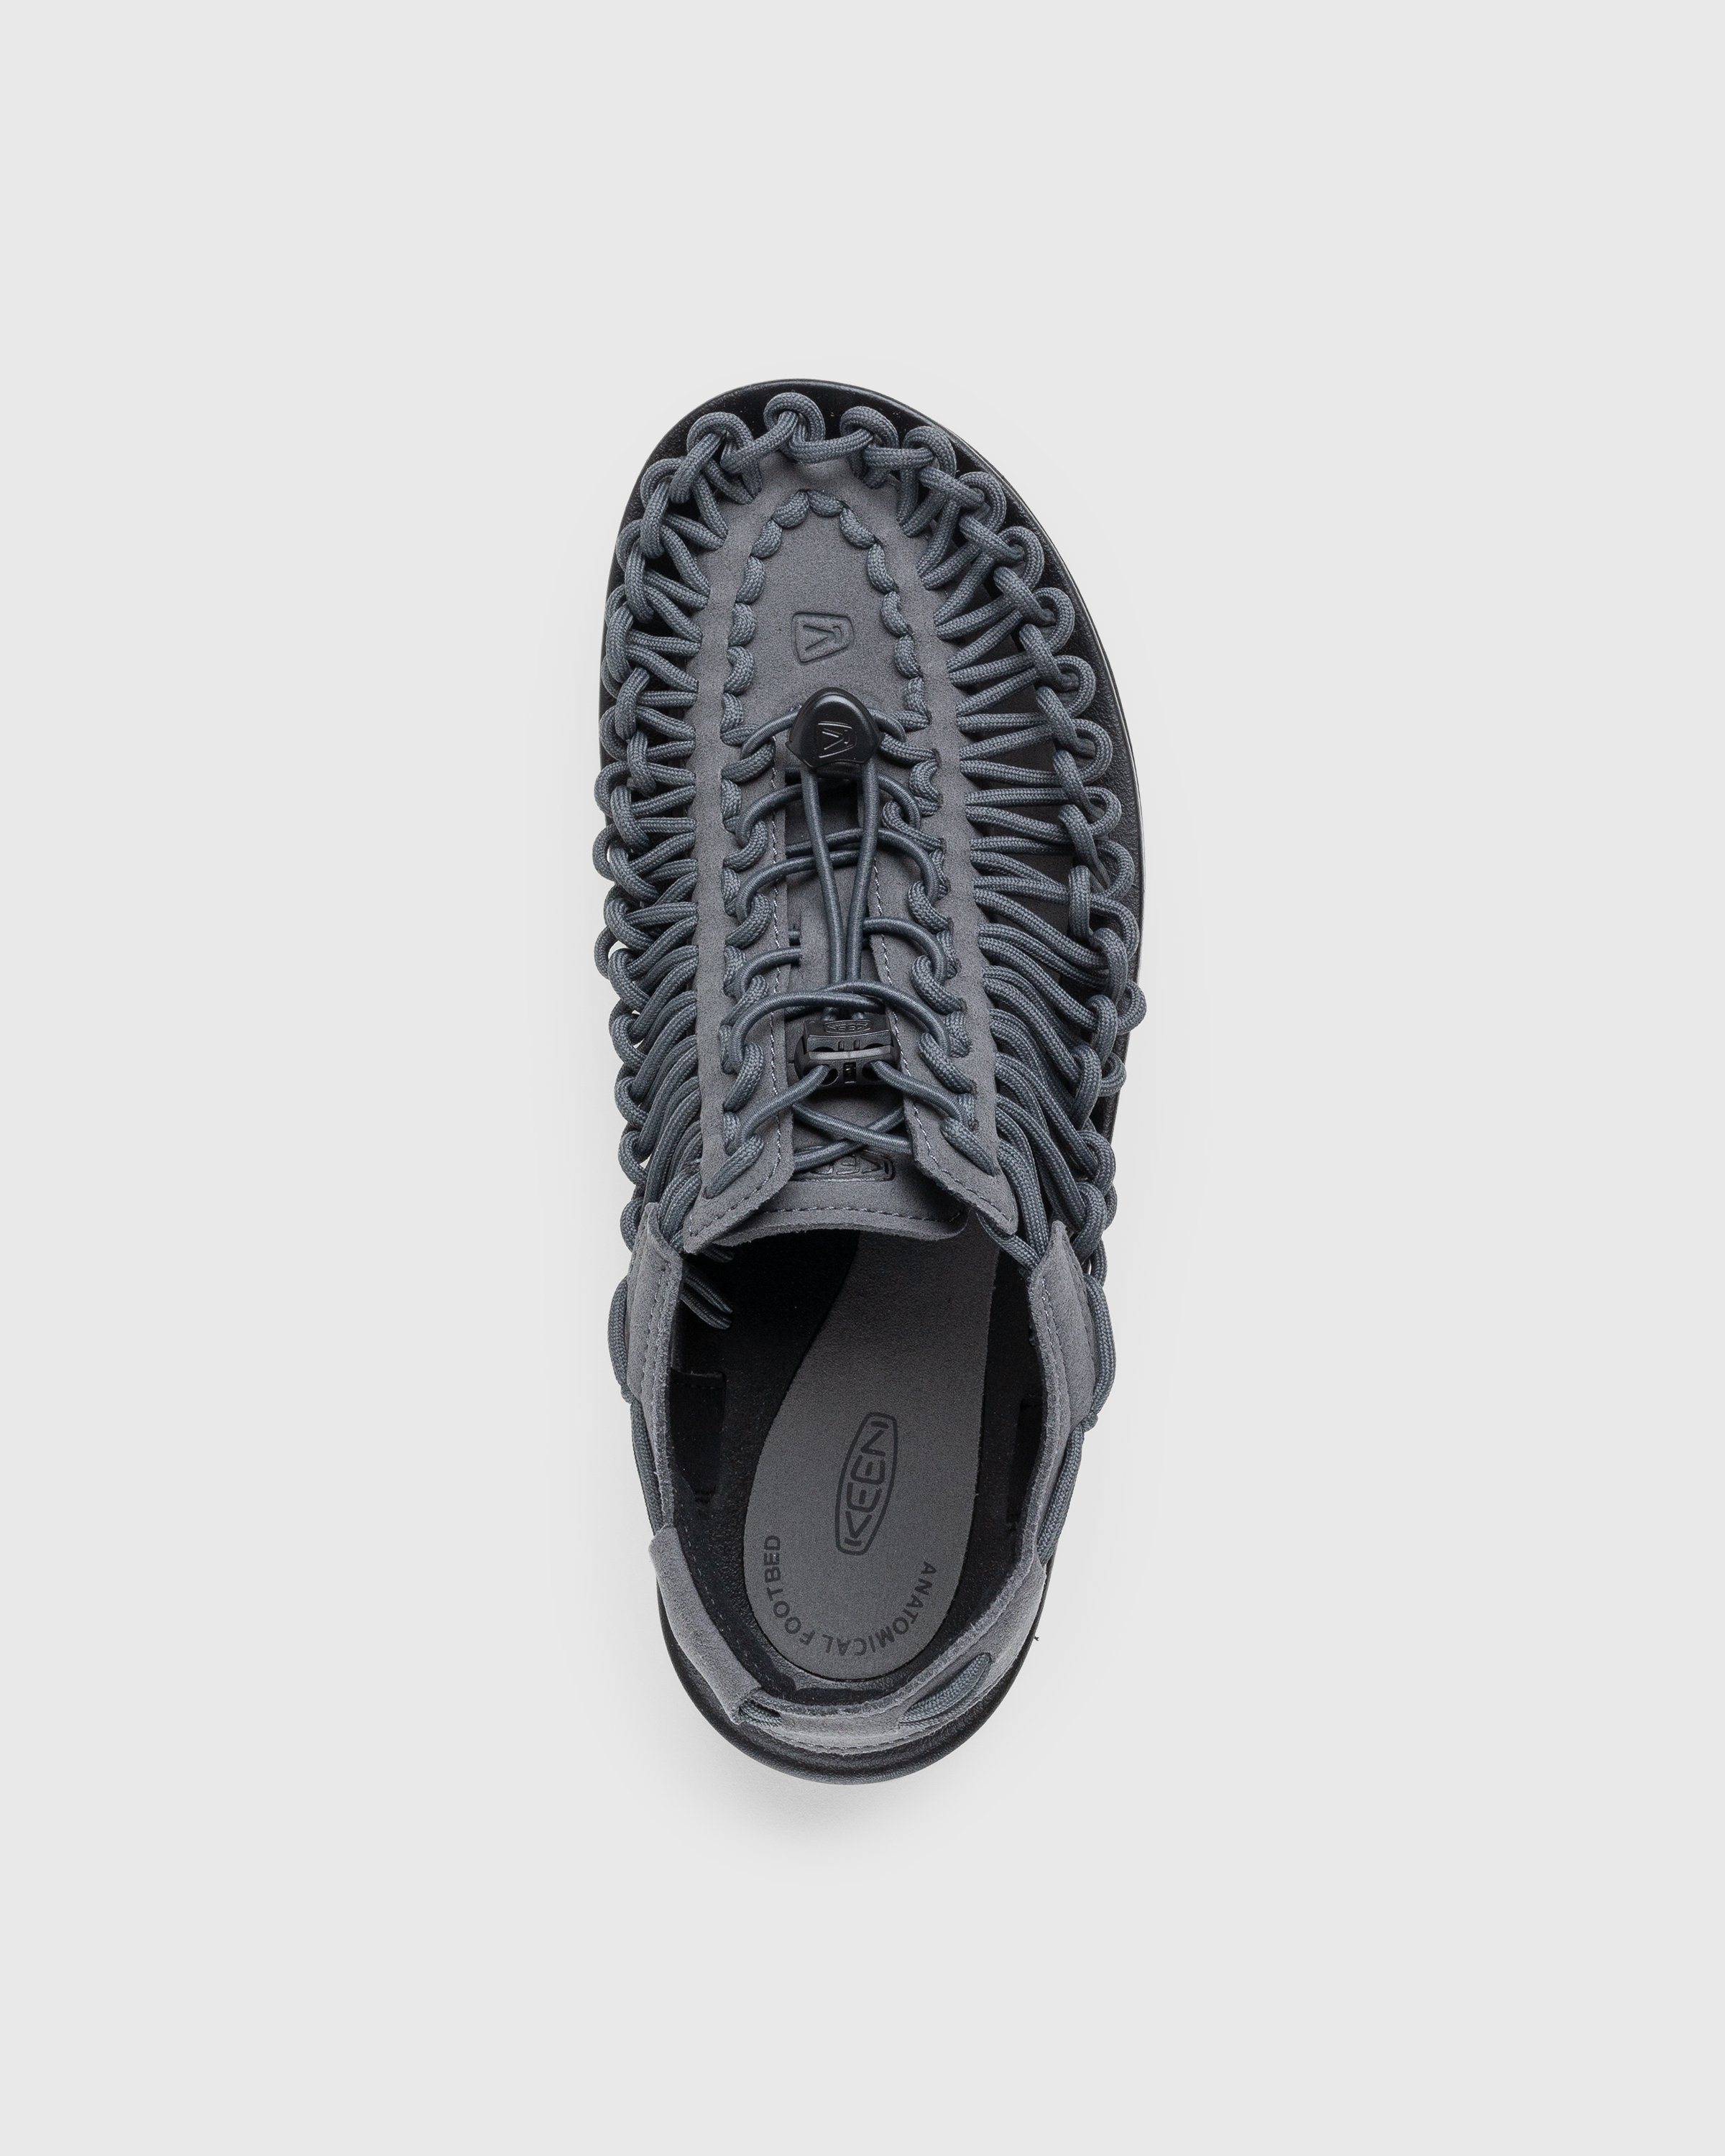 Keen - Uneek Magnet/Black - Footwear - Grey - Image 5